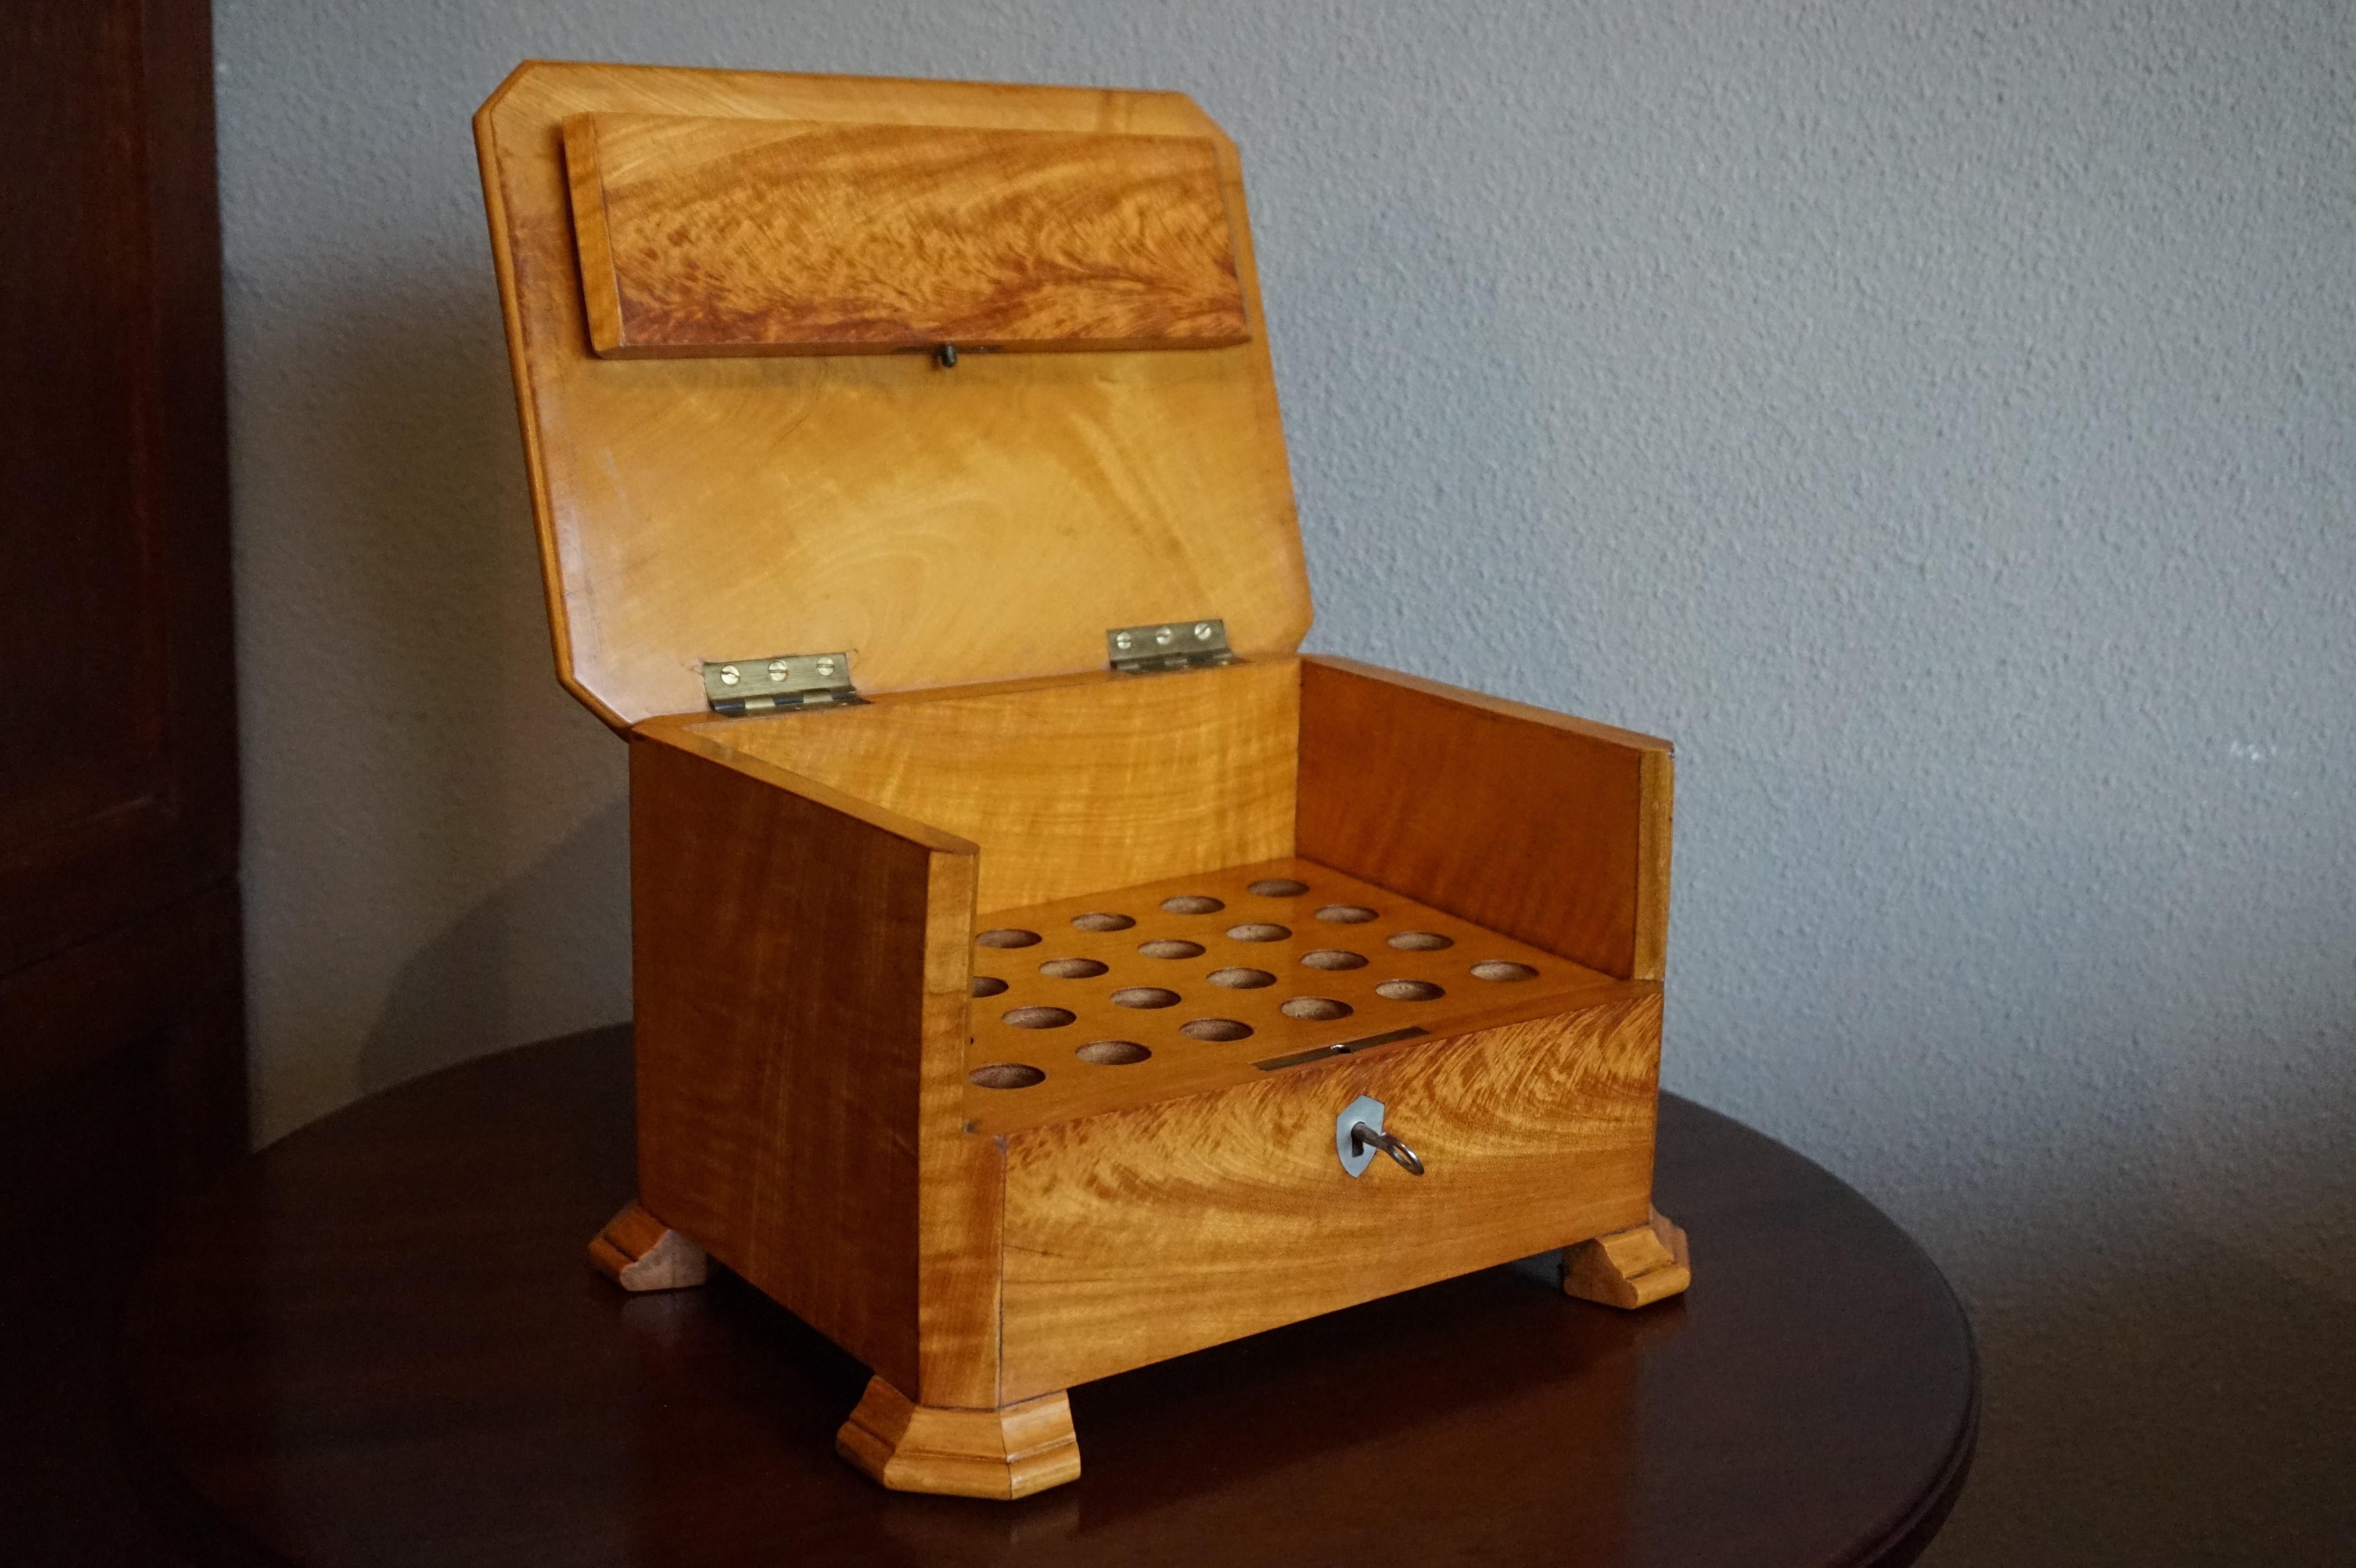 Großartige Qualität und hervorragender Zustand antike Kiste für die Präsentation Ihrer besten Zigarren.

Diese wunderschön gestaltete und perfekt handgefertigte Zigarrenkiste ist ein weiterer unserer jüngsten Funde und diese Antiquität ist ein